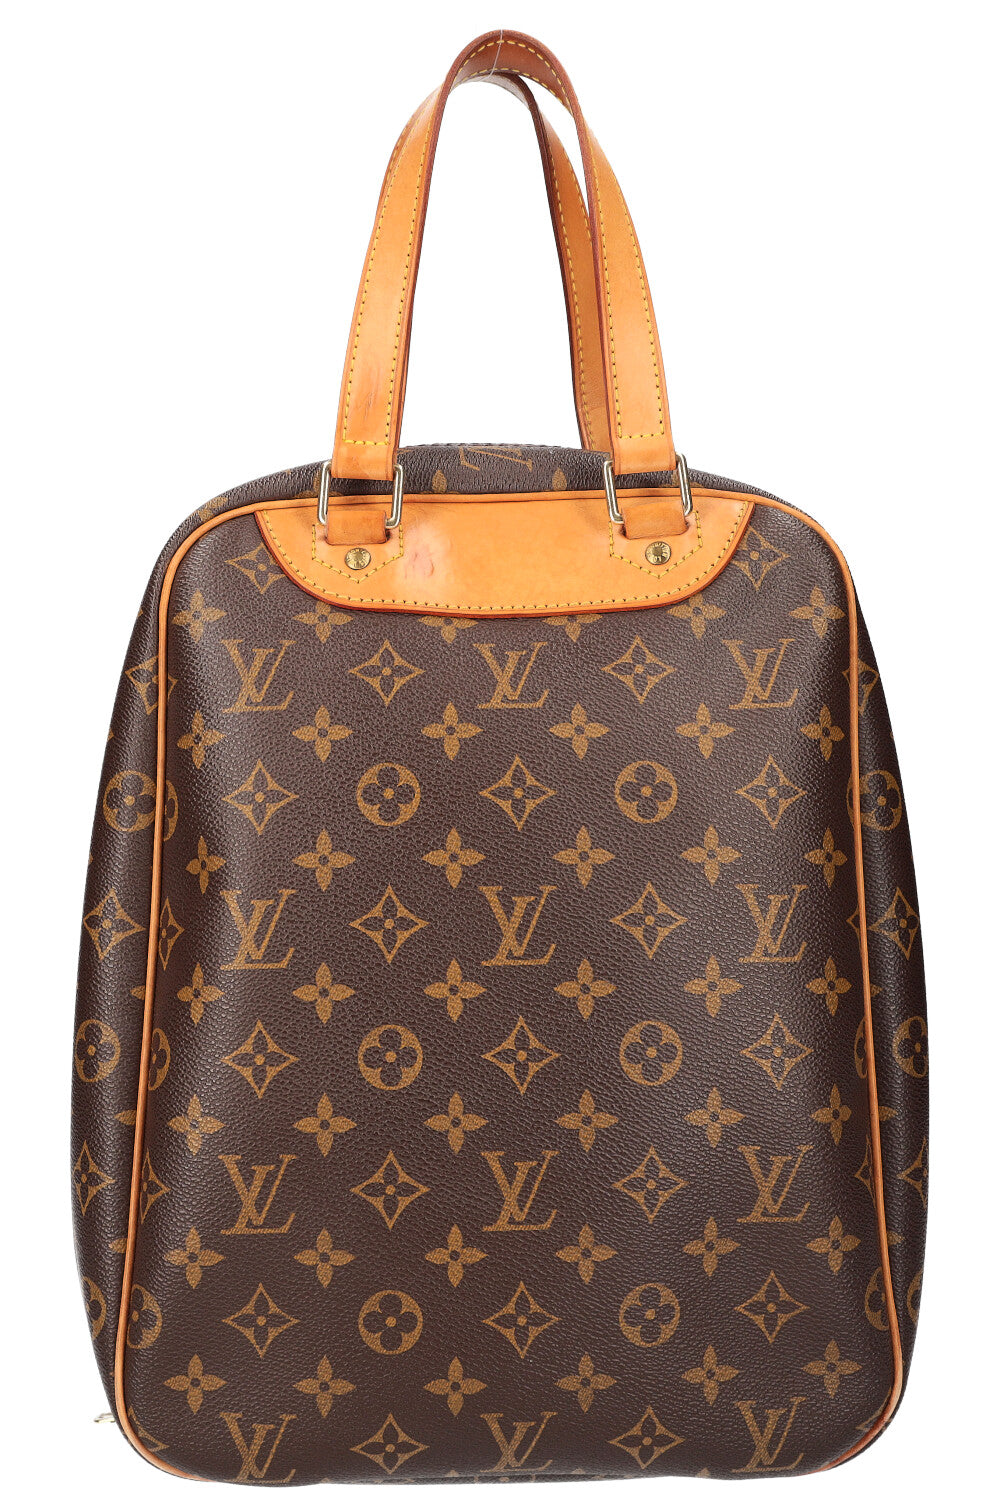 Sacs de voyage et valises Louis Vuitton homme à partir de 824 €